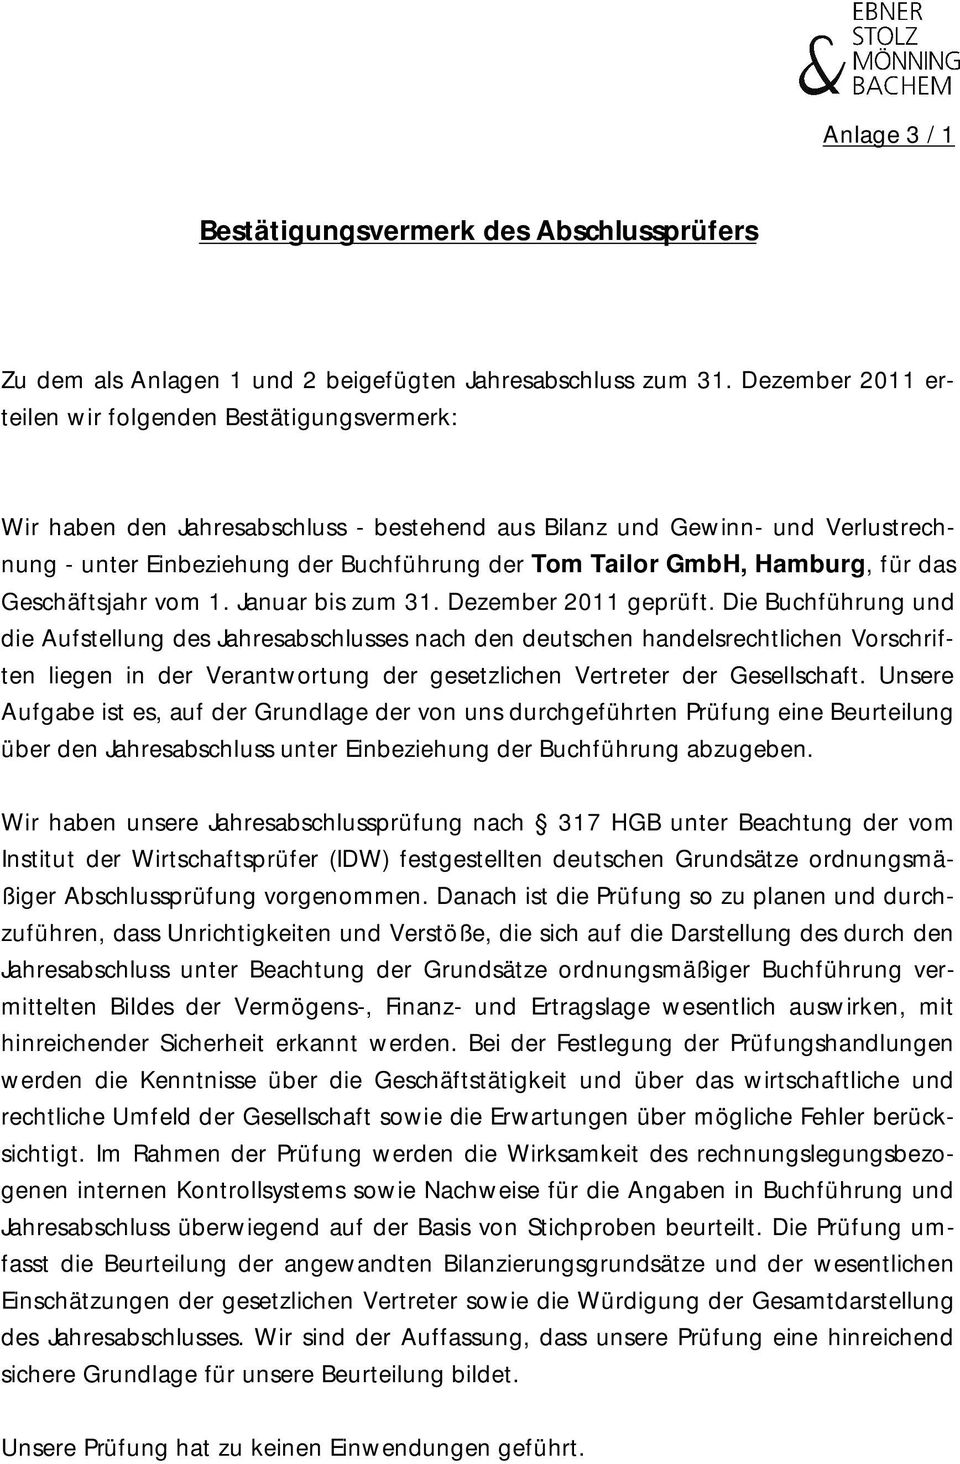 GmbH, Hamburg, für das Geschäftsjahr vom 1. Januar bis zum 31. Dezember 2011 geprüft.